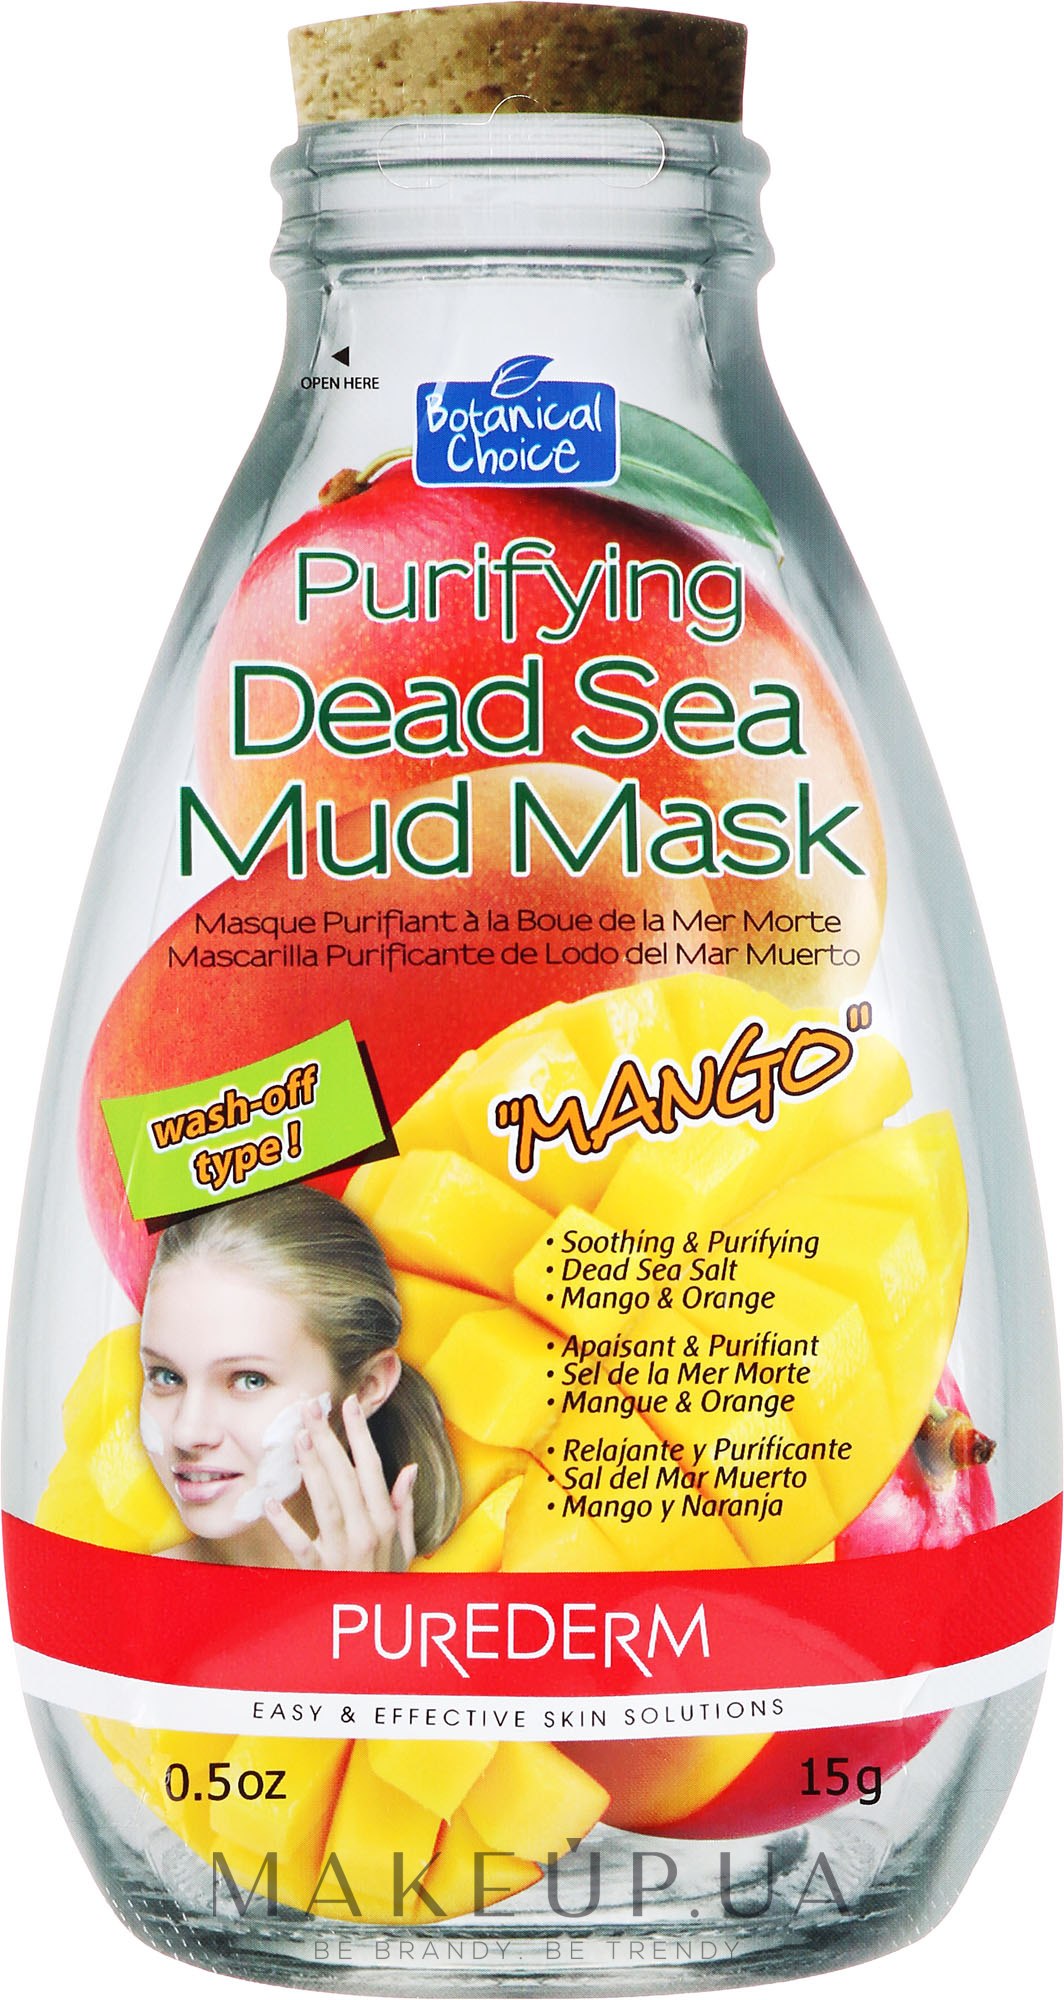 Маска очищающая для лица с глиной Мертвого моря "Манго" - Purederm Purifying Dead Sea Mud Mask With Mango — фото 15g